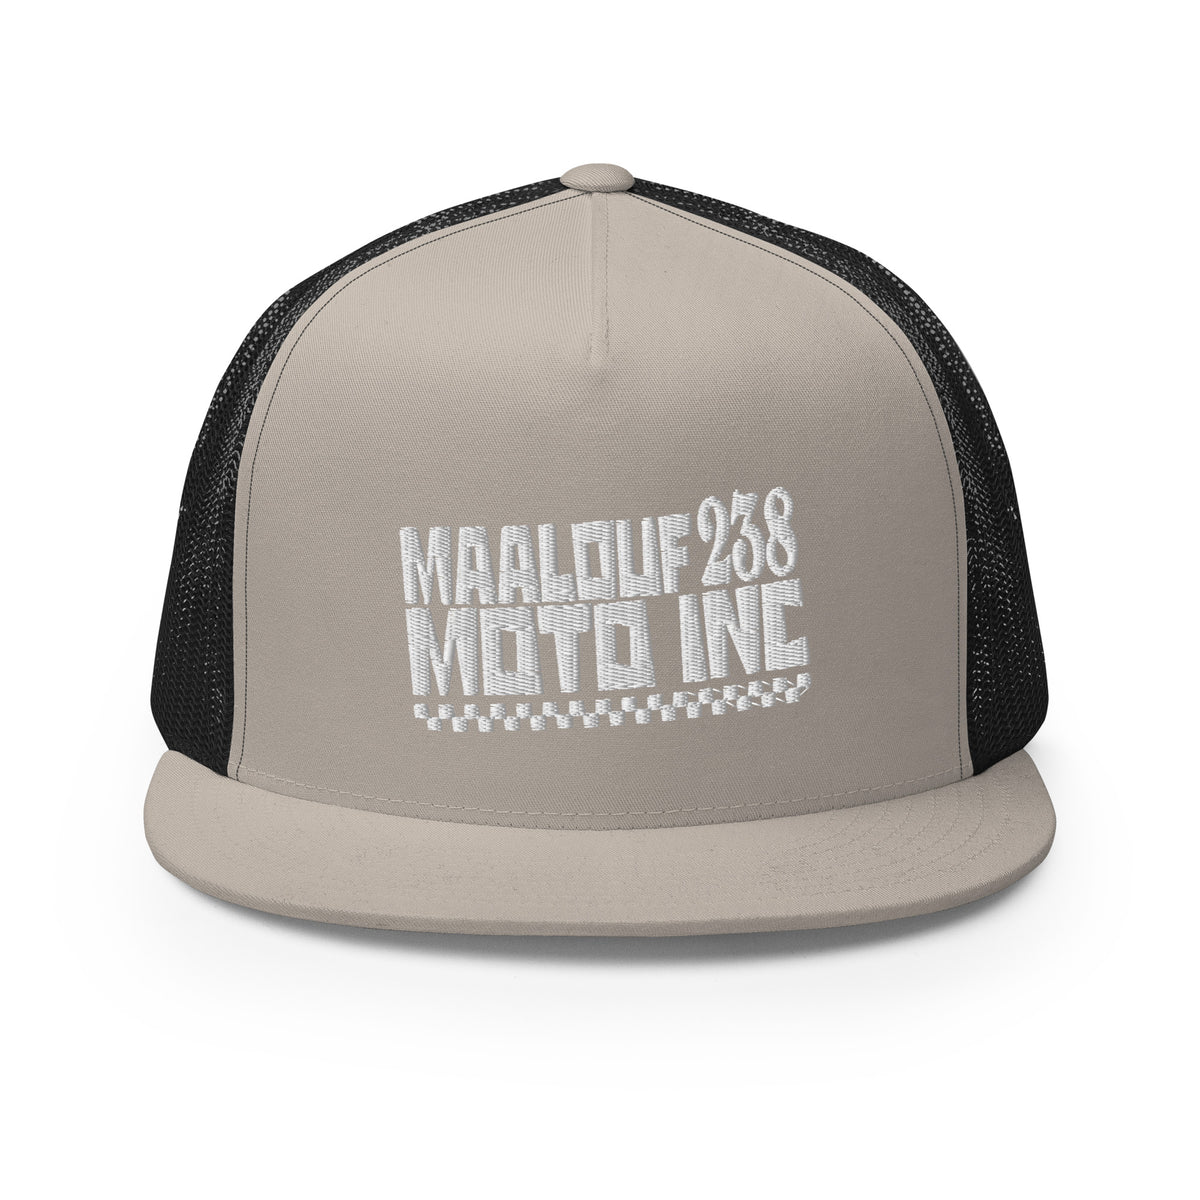 Maalouf 238 - The Wall - Trucker Cap